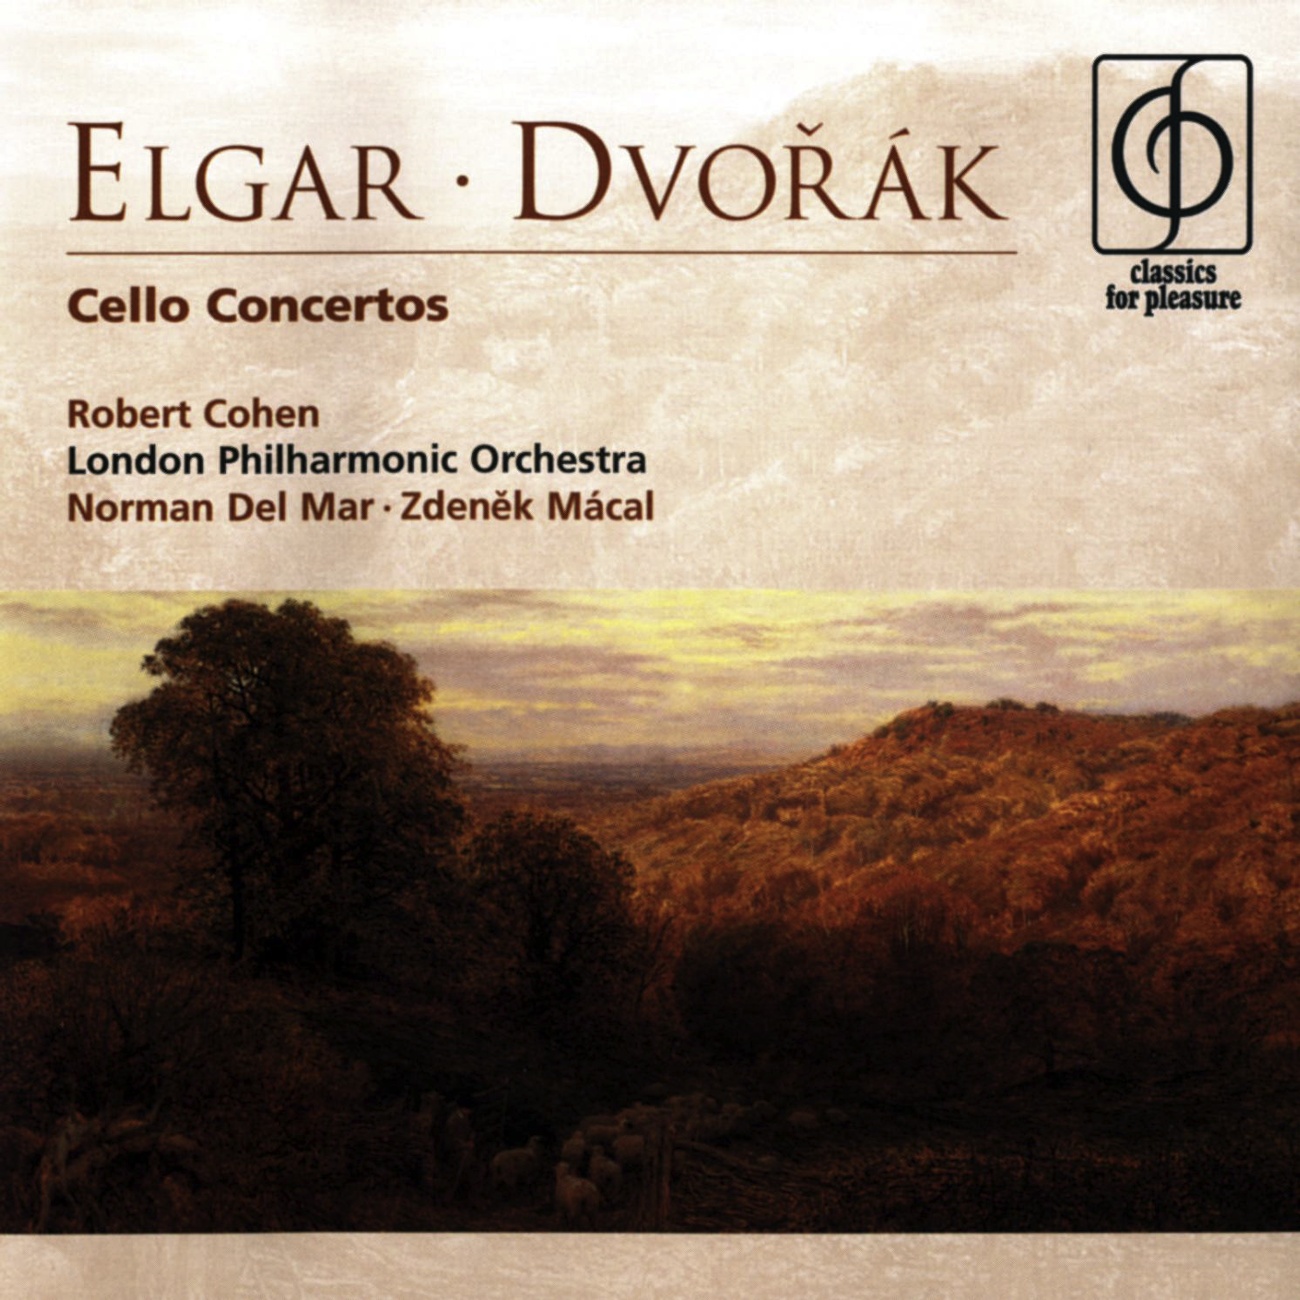 Cello Concerto in E minor Op. 85 (1998 Digital Remaster): IV. Allegro - Moderato - Allegro, ma non troppo - Poco piu lento - Ada